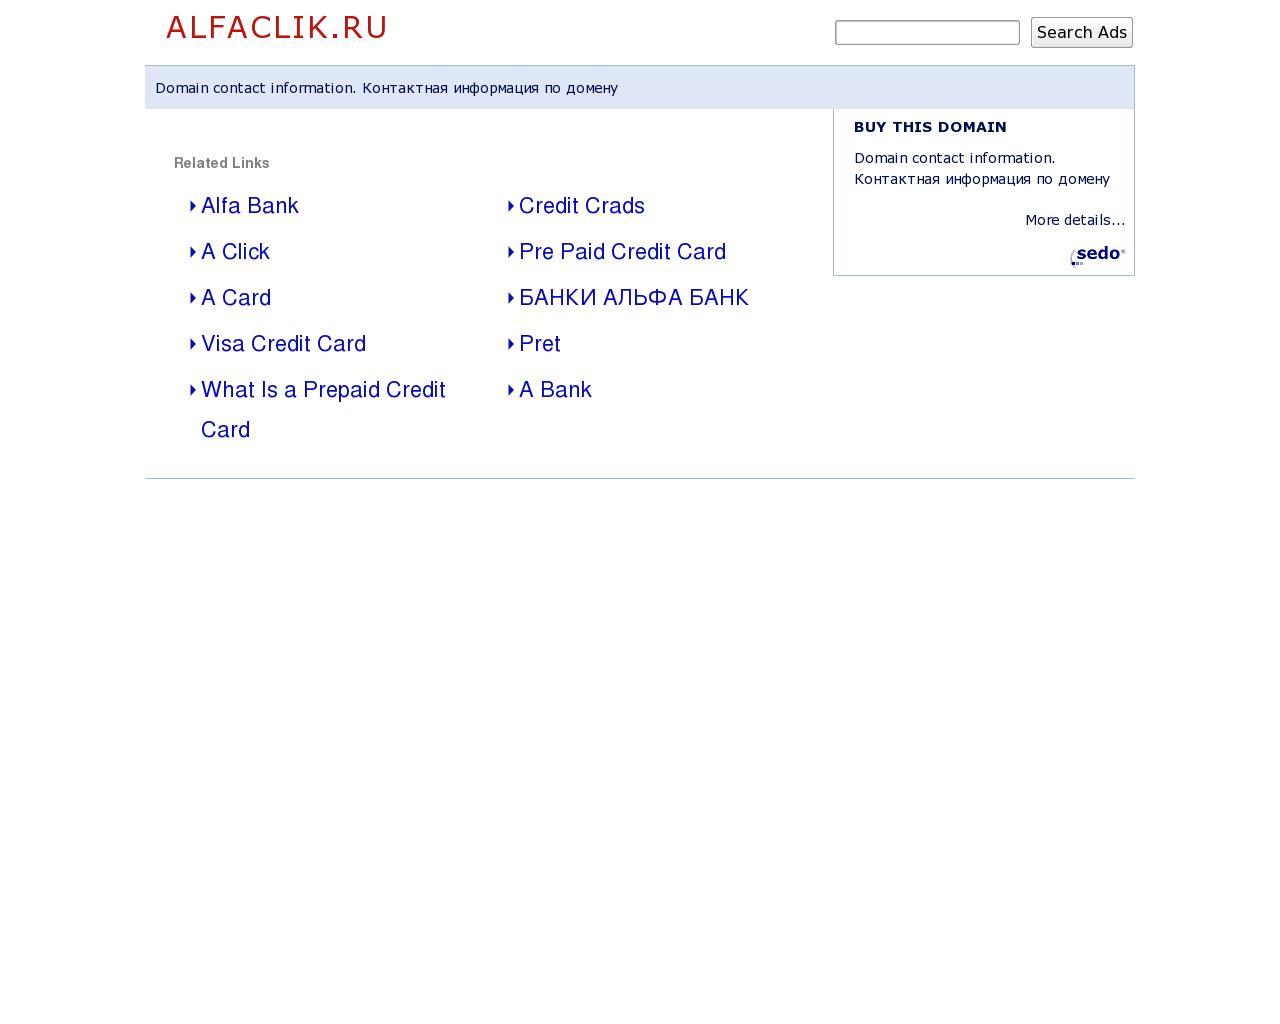 Изображение сайта alfaclik.ru в разрешении 1280x1024